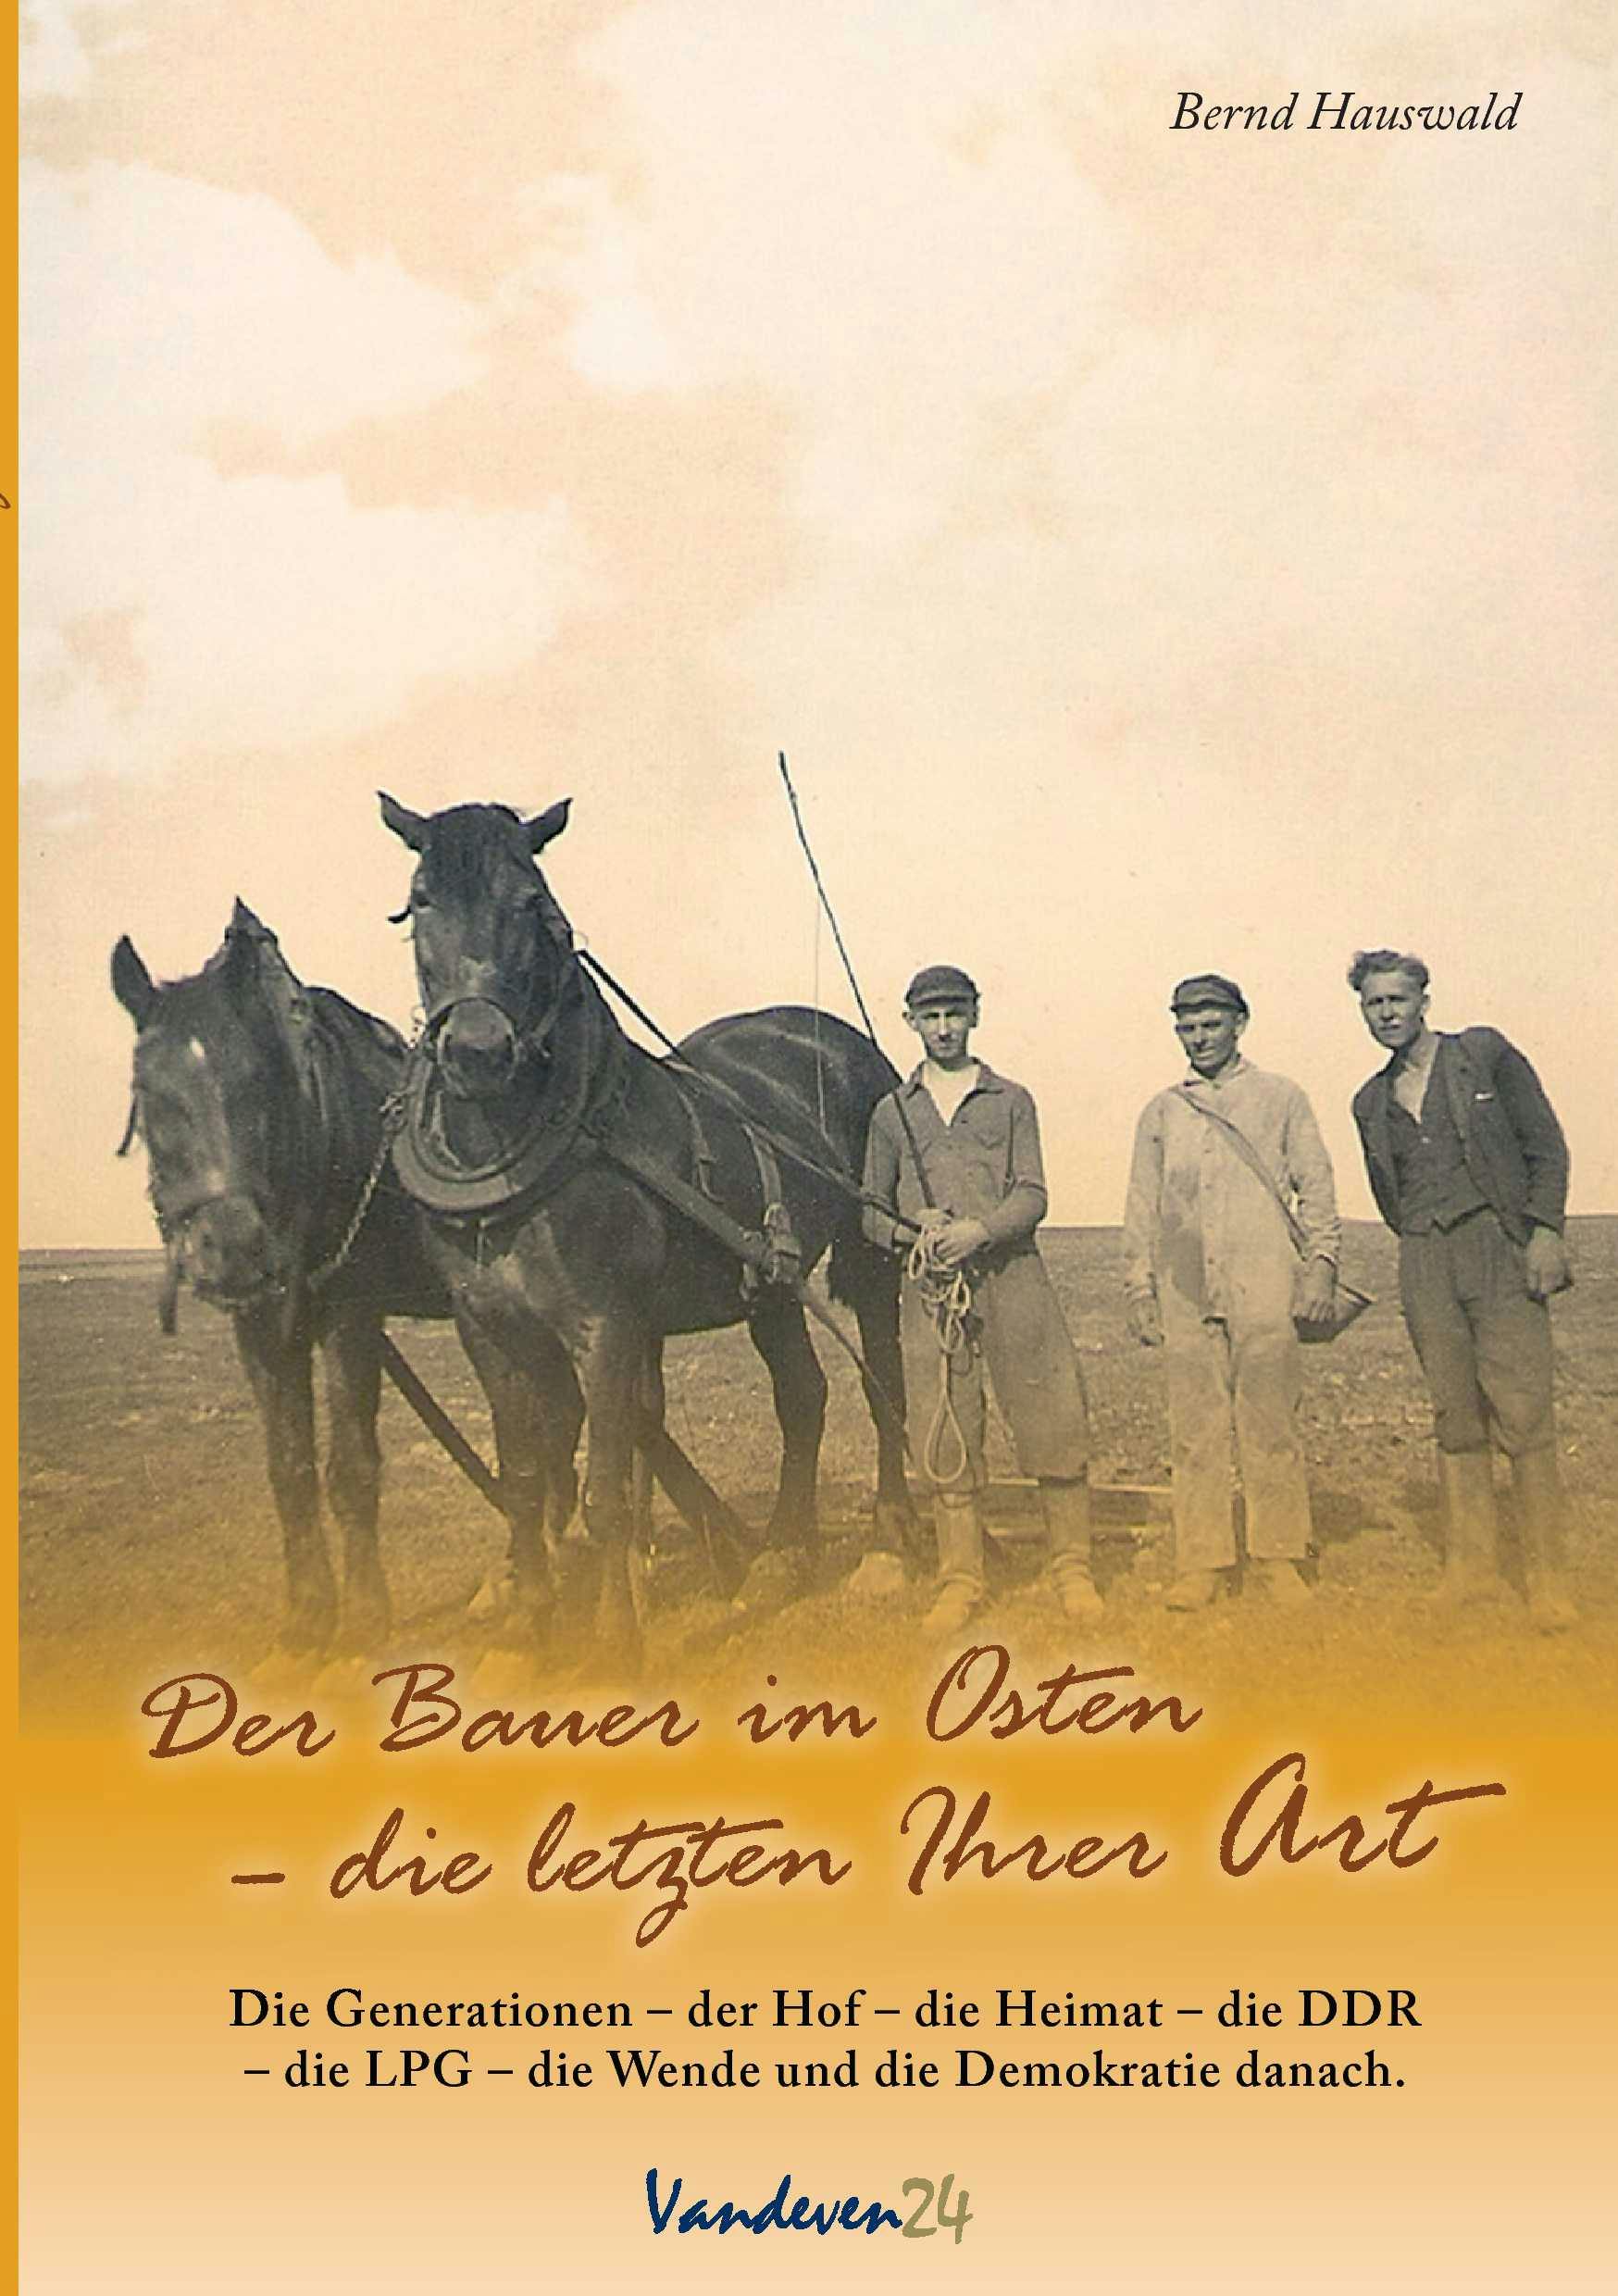 Der Bauer im Osten - Bernd Hauswald